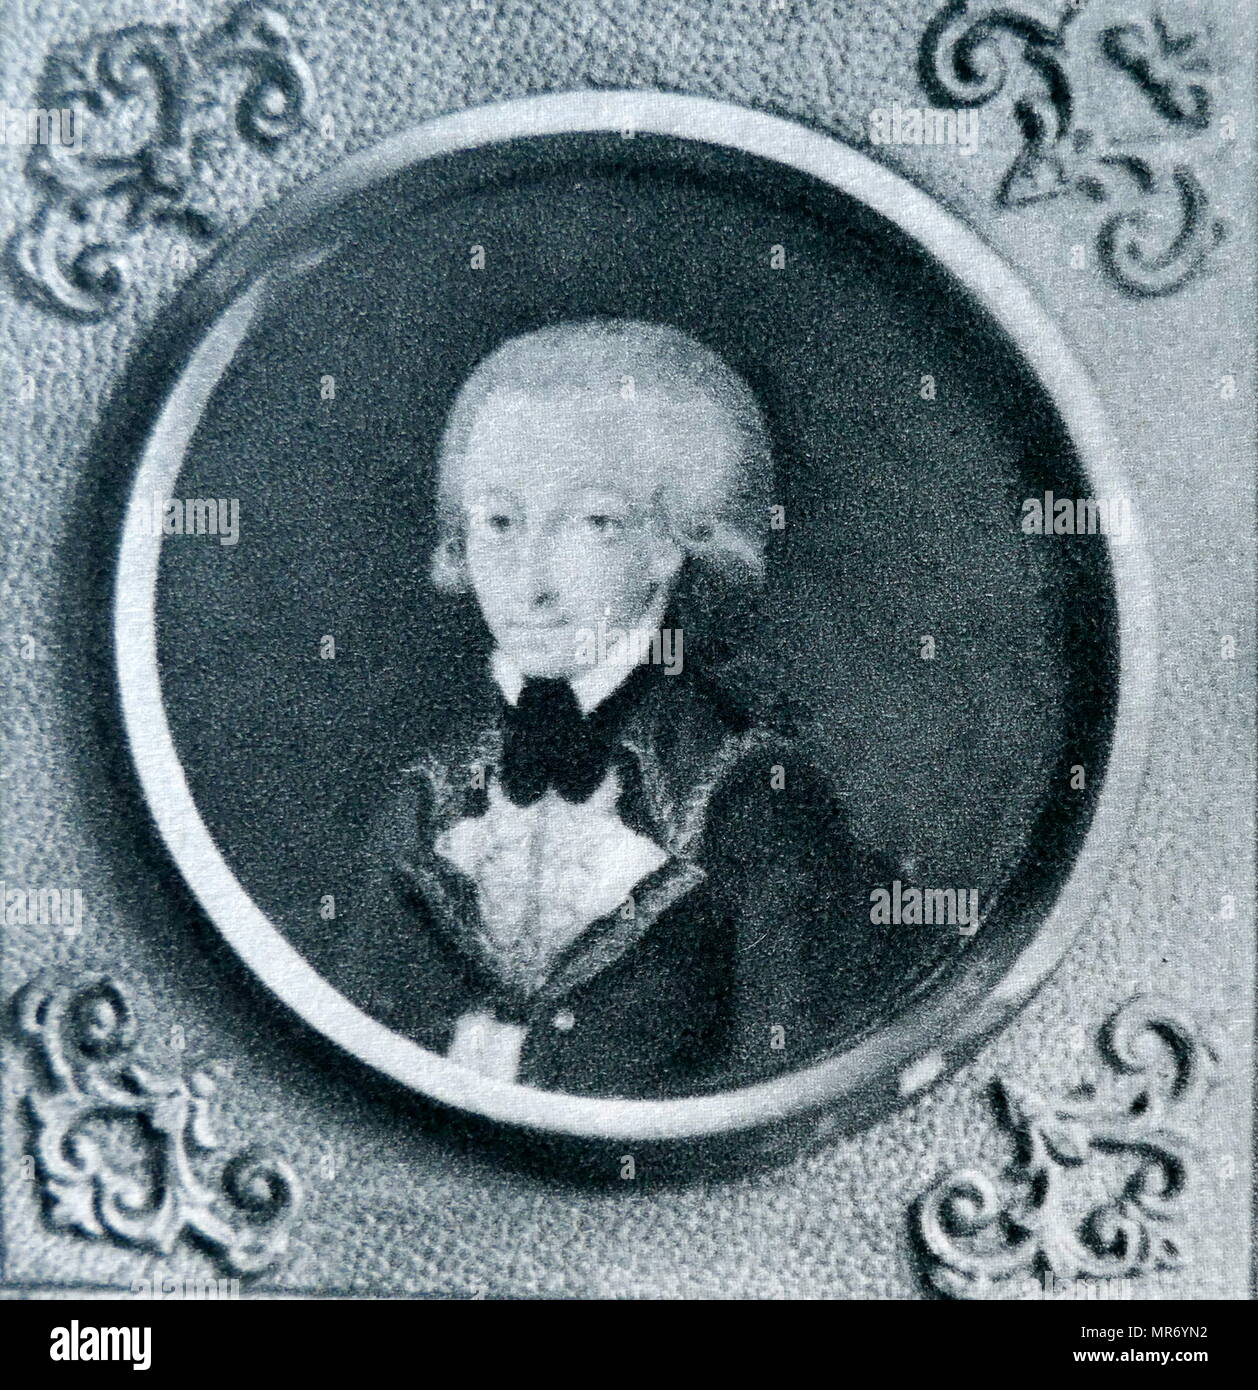 Miniatur Porträt von Wolfgang Mozart, 1773. Wolfgang Amadeus Mozart (1756 - 1791), war ein produktiver und einflussreichsten Komponisten der klassischen Ära. Stockfoto